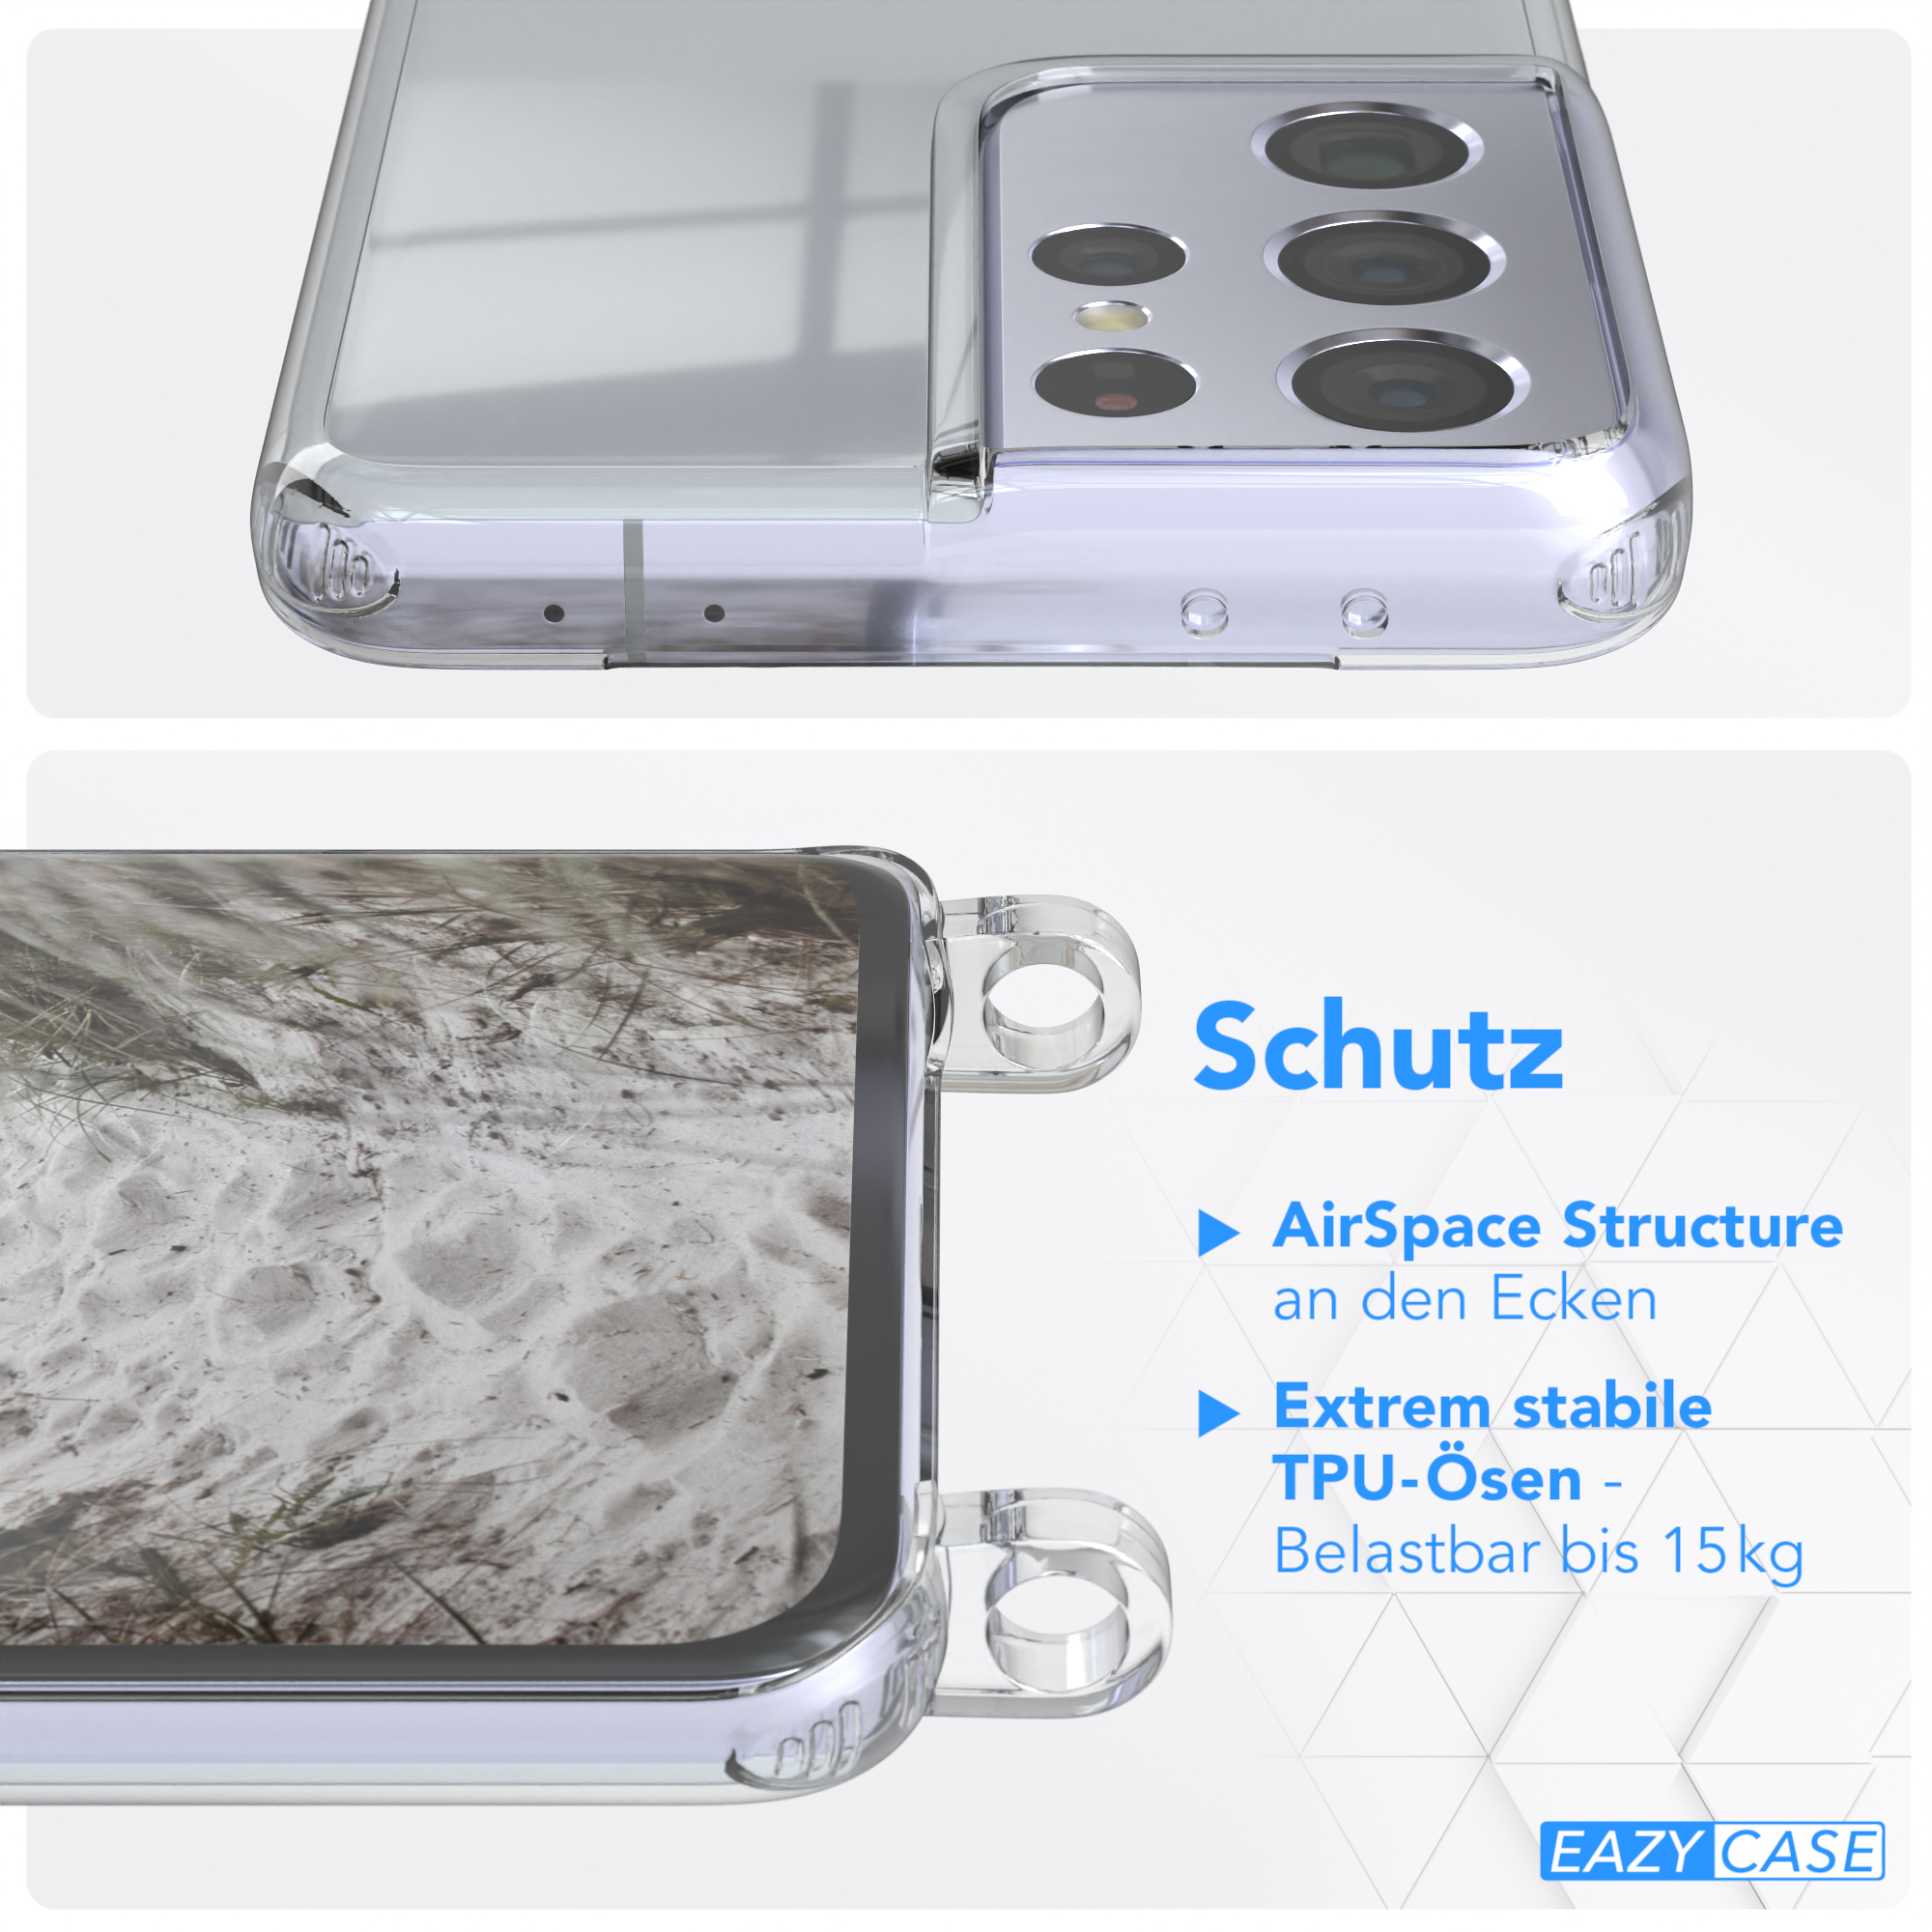 / Samsung, Ultra Beige unifarbend, CASE Umhängetasche, S21 runder Transparente Galaxy Grau Kette mit 5G, EAZY Handyhülle Taupe